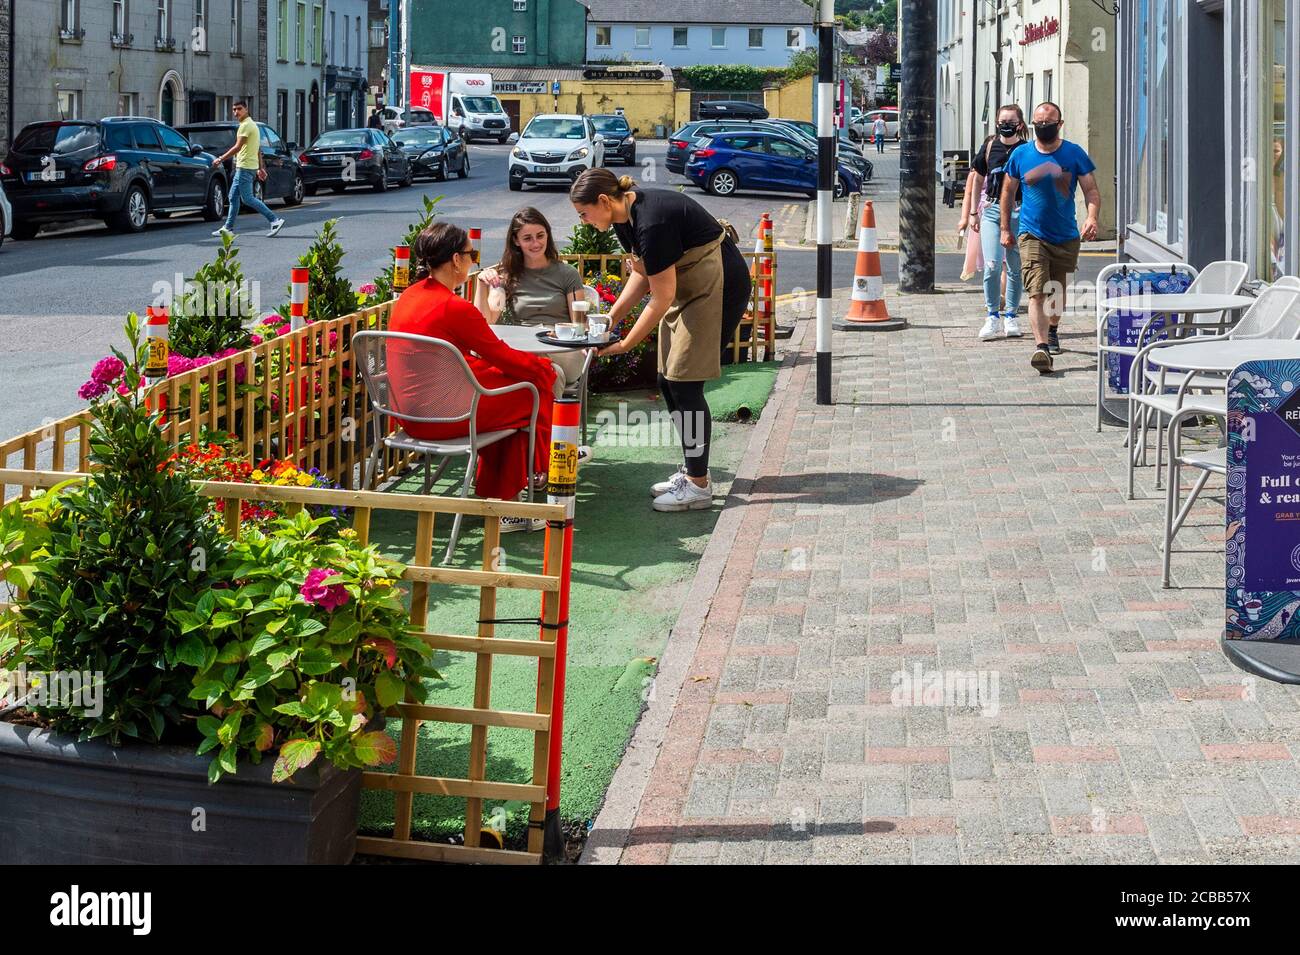 Bandon, West Cork, Irlande. 12 août 2020. Les places en plein air dans les cafés sont en train de devenir la nouvelle norme avec la pandémie COVID-19. Une serveuse sert deux clients à l'extérieur d'un café à Bandon cet après-midi. Crédit : AG News/Alay Live News Banque D'Images